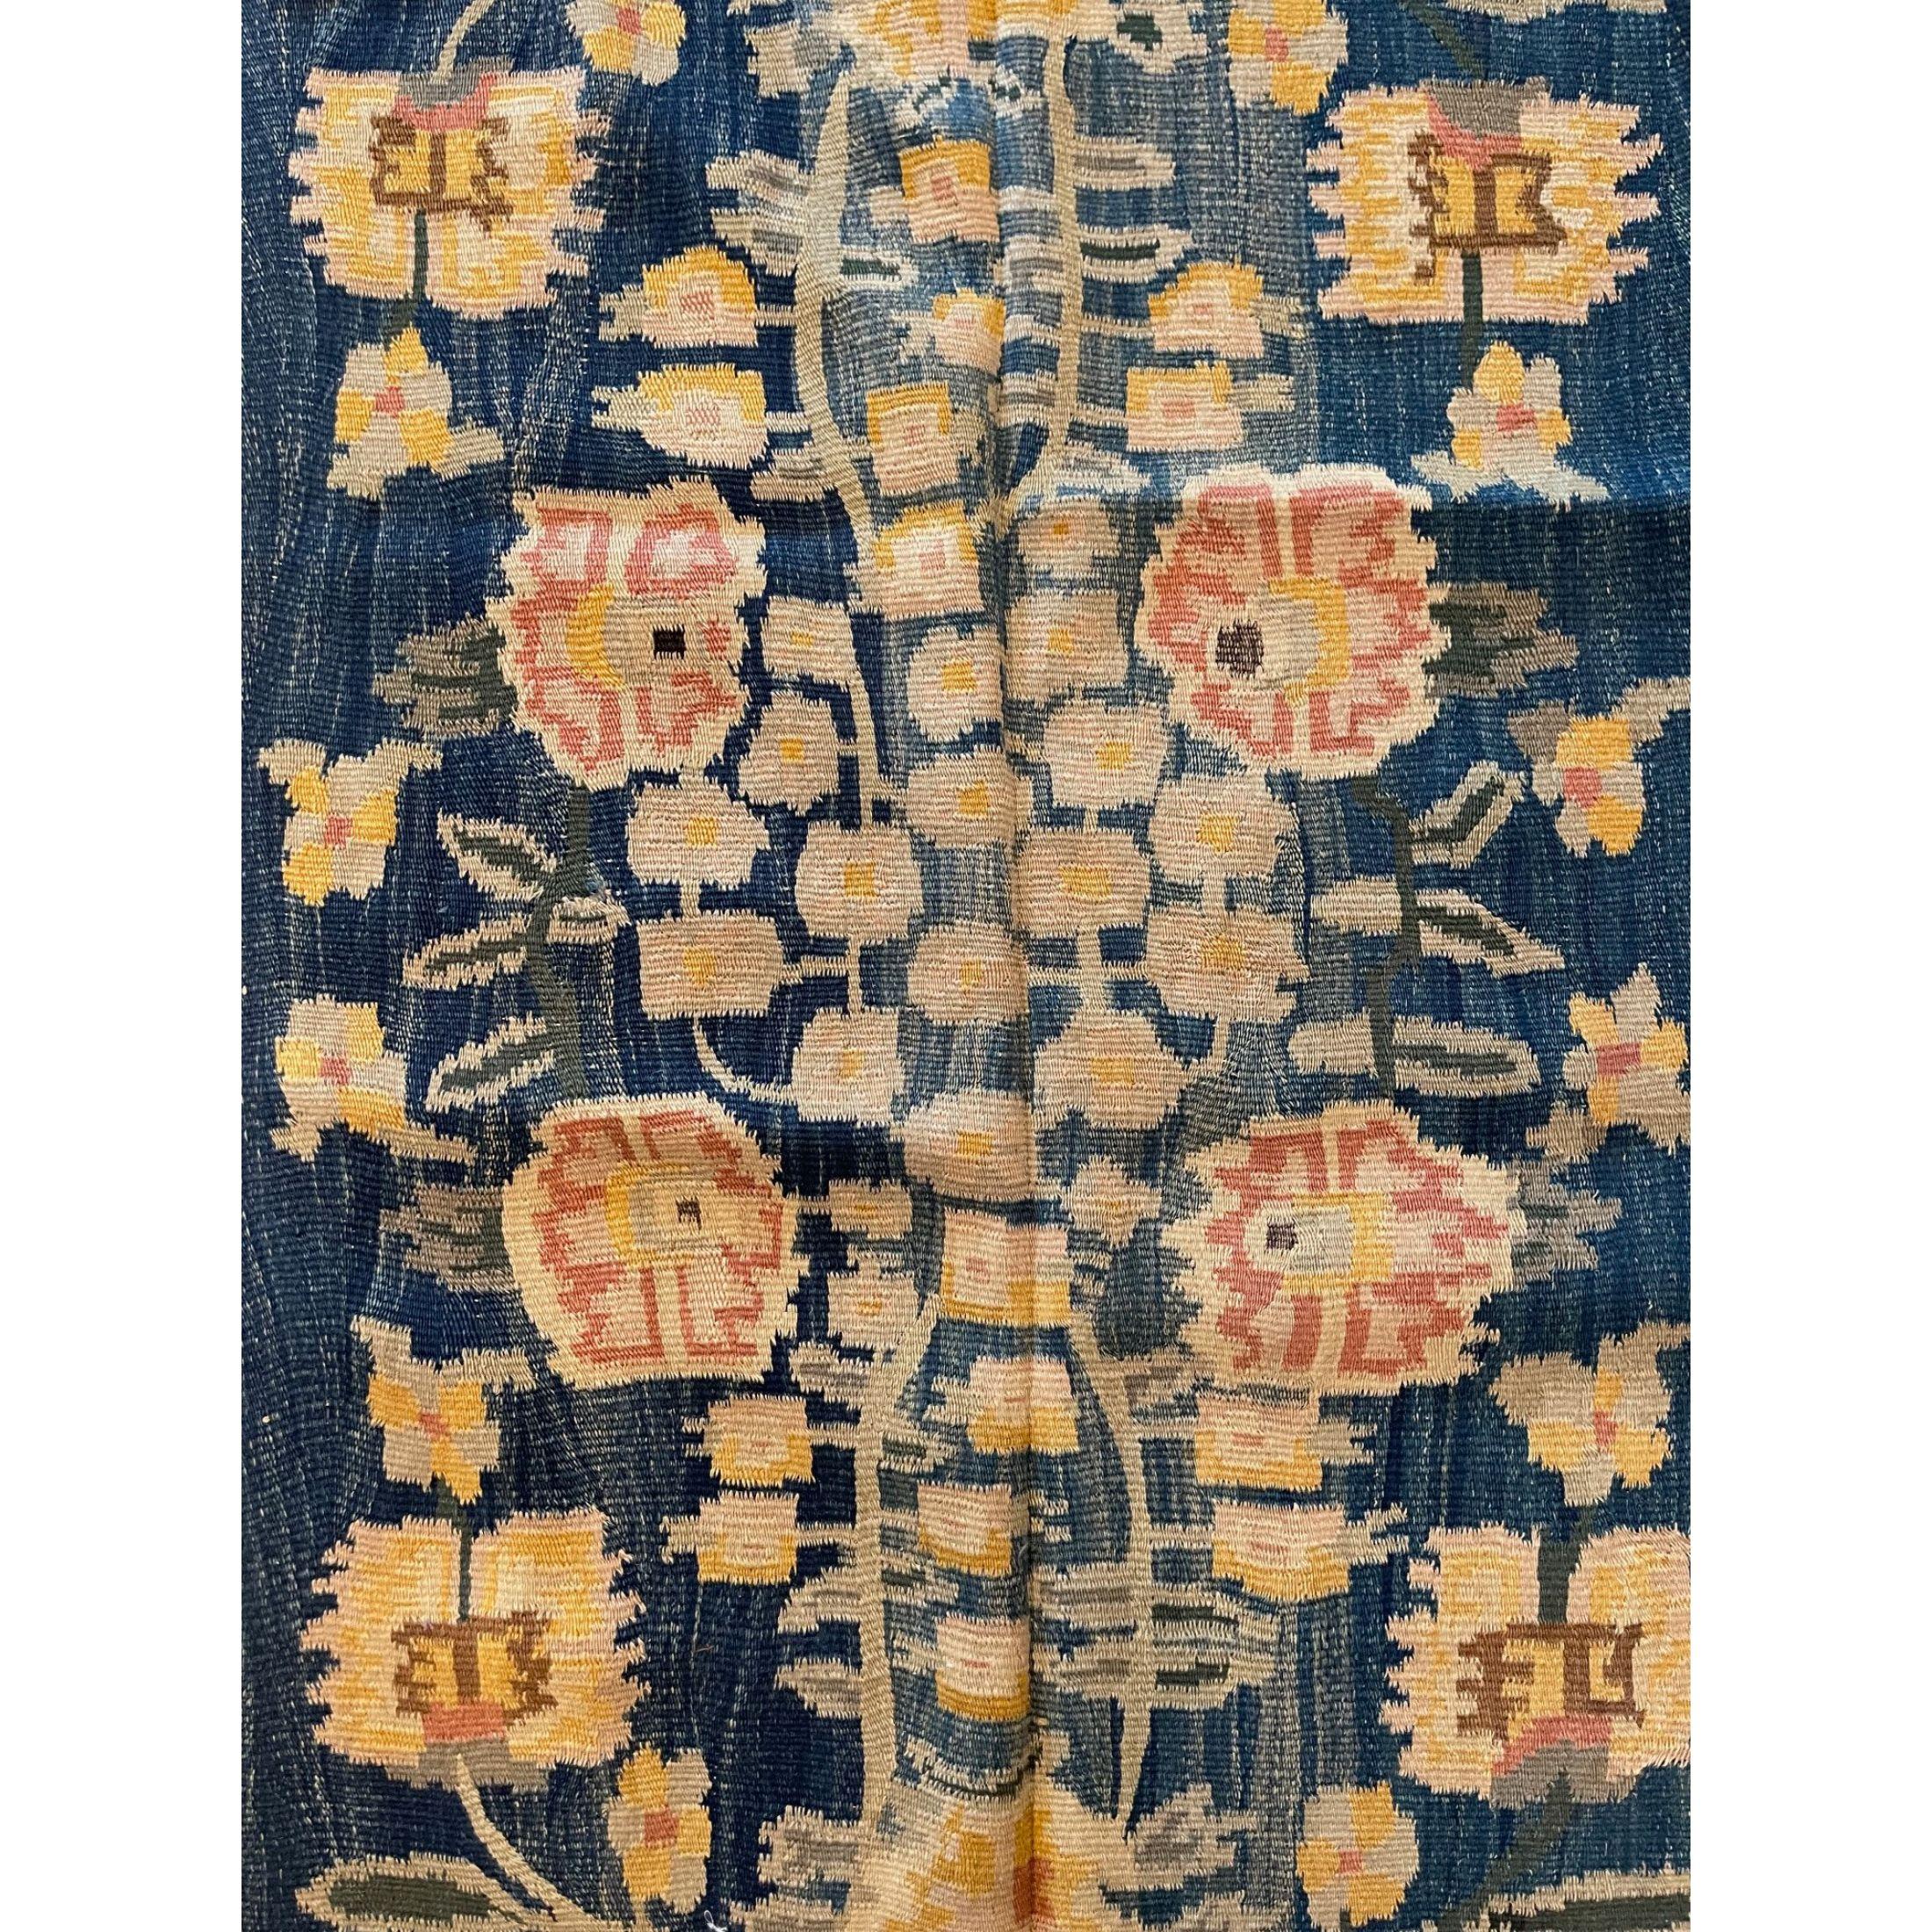 Wunderschöne Sammlung antiker rumänischer Kelims und Teppiche aus Bessarabien
Antike bessarabische Teppiche/Kilims in Flor- und Gobelin-Webtechnik gehören zu den schönsten Teppichen, die in Europa hergestellt wurden. Viele der bessarabischen Kelims